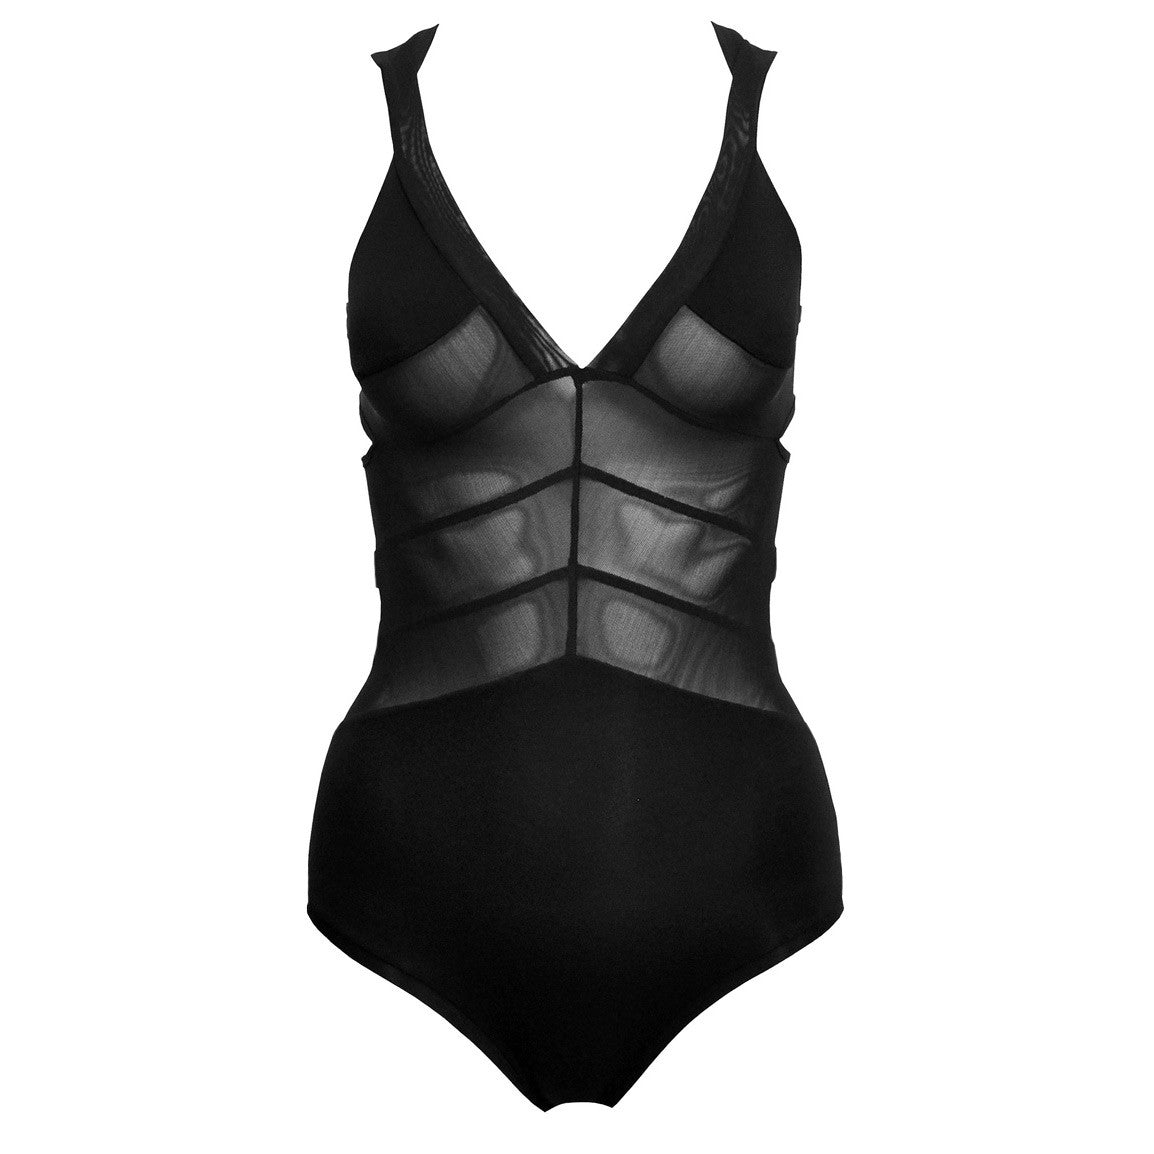 DSTM Form bodysuit / swimsuit